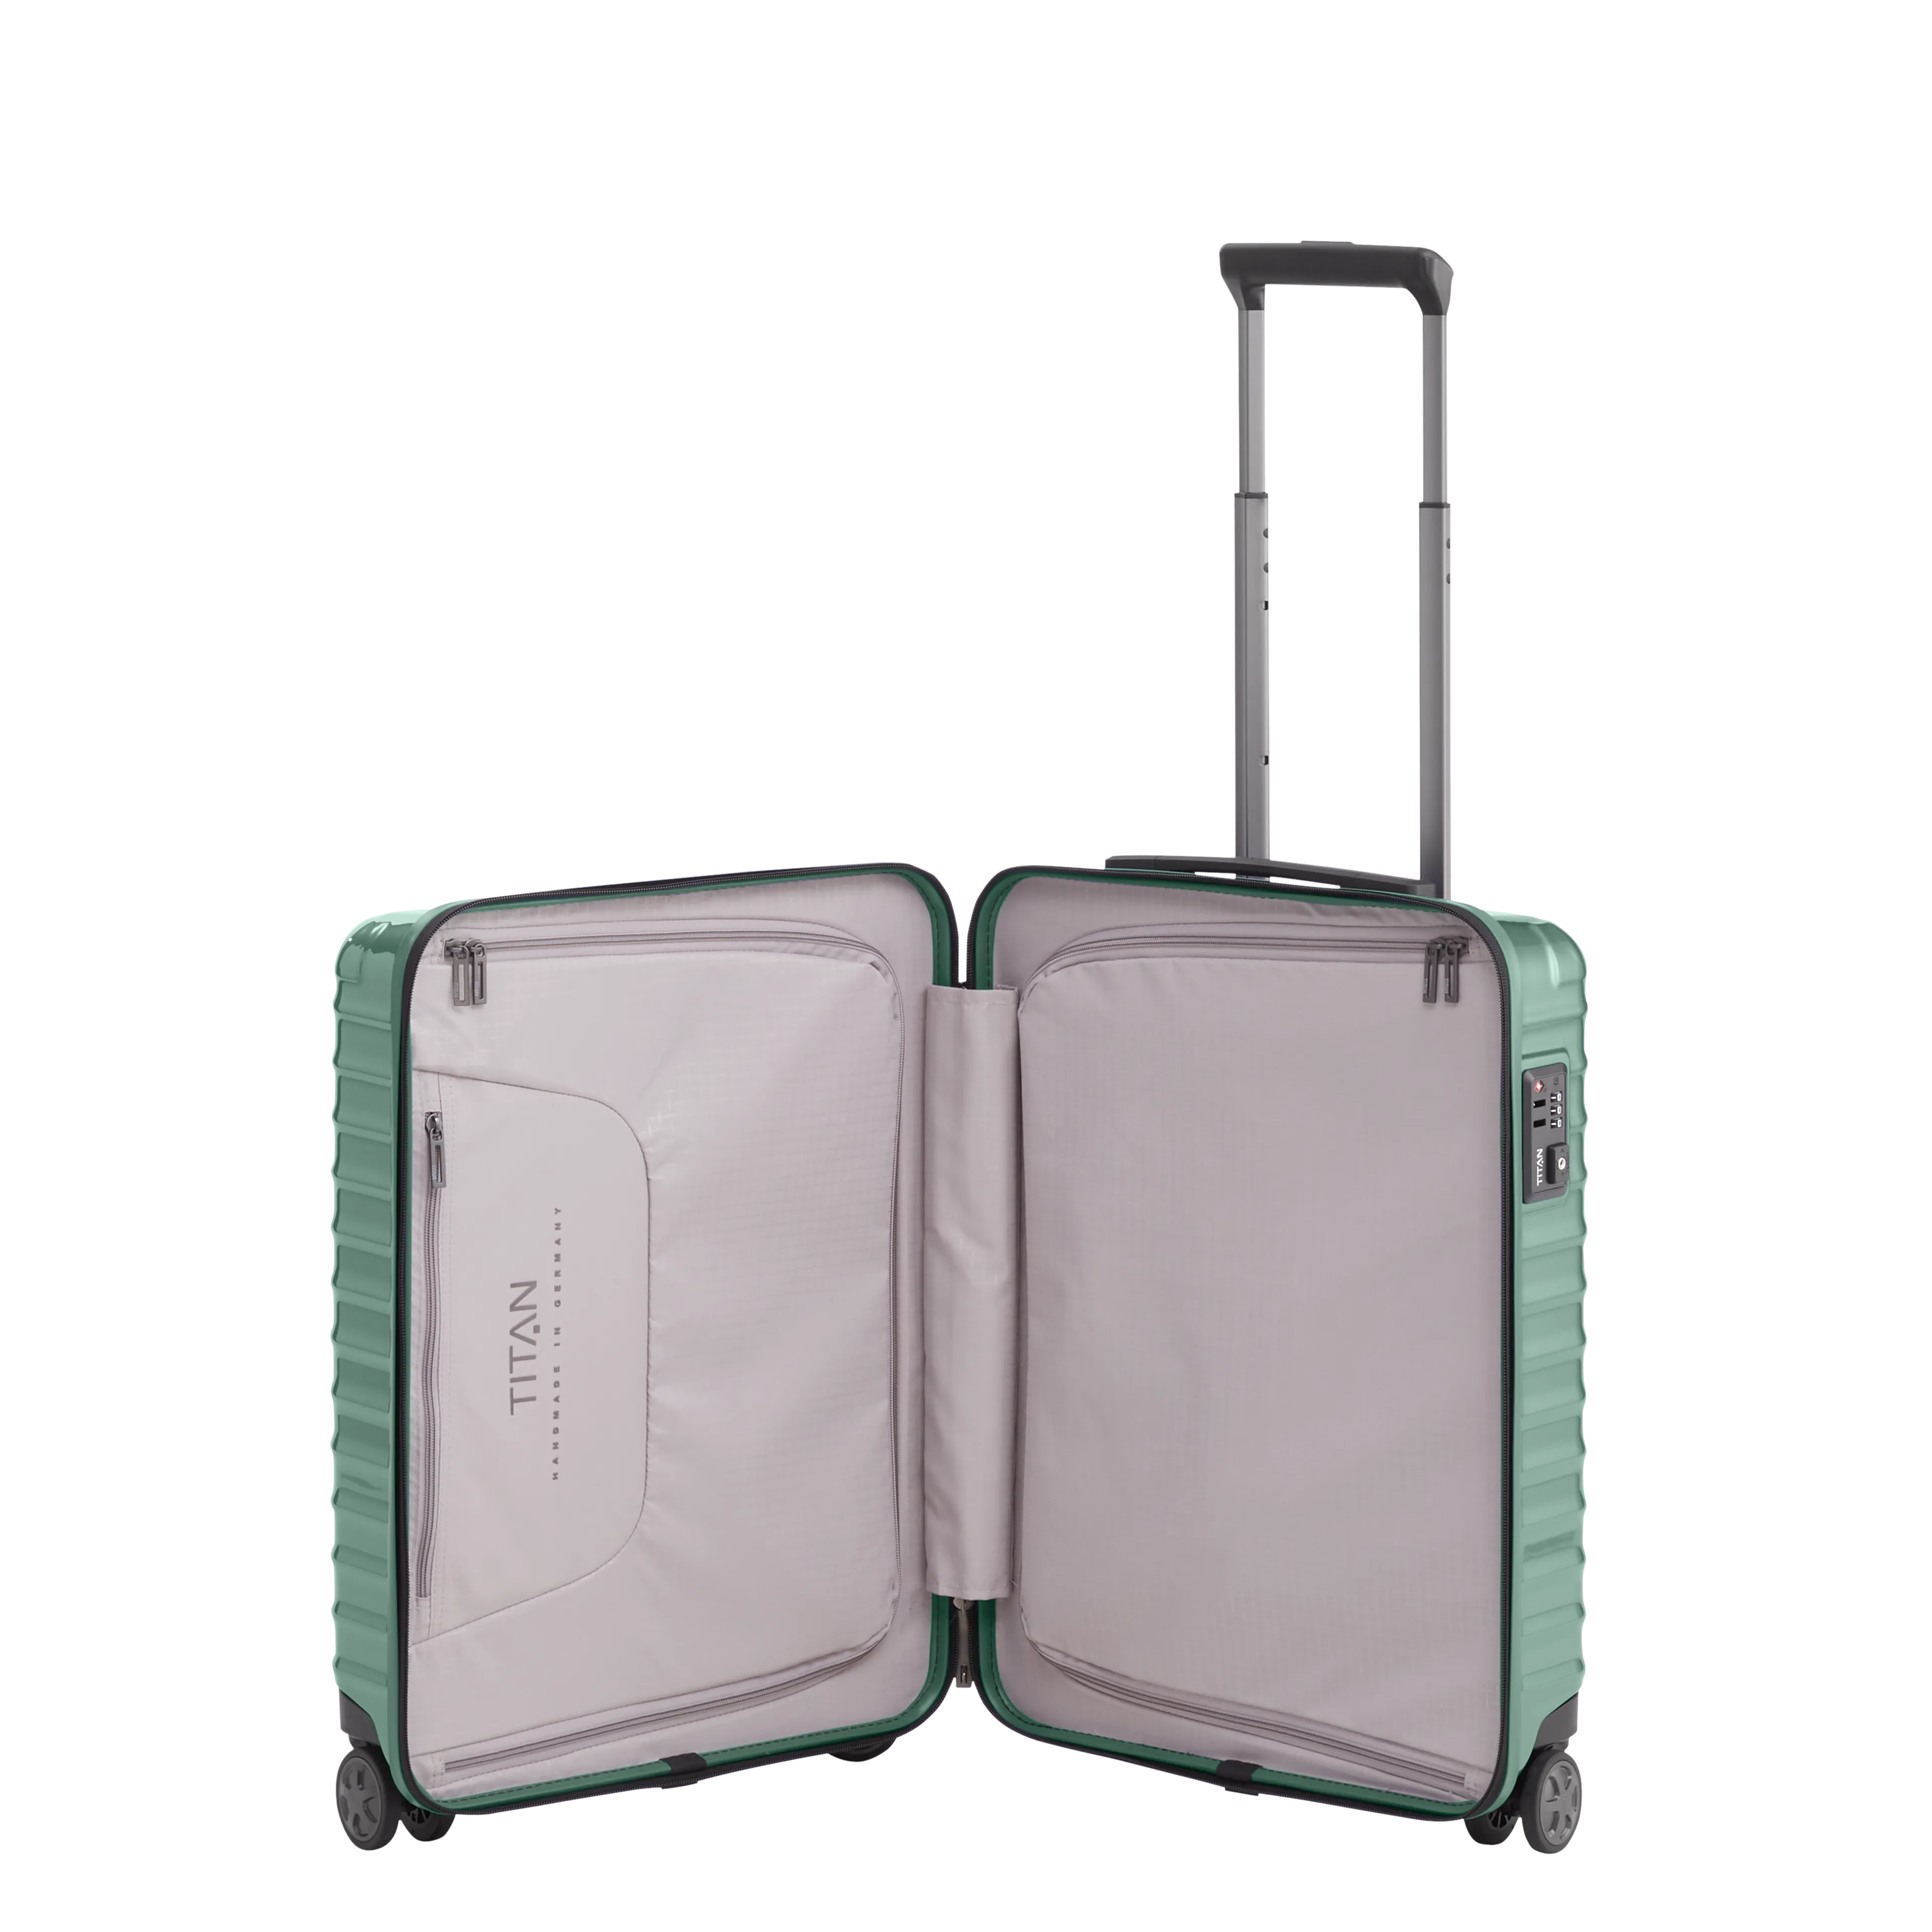 Ein TITAN Koffer der Serie LITRON Innenansicht in traubengrün Größe S 55cm